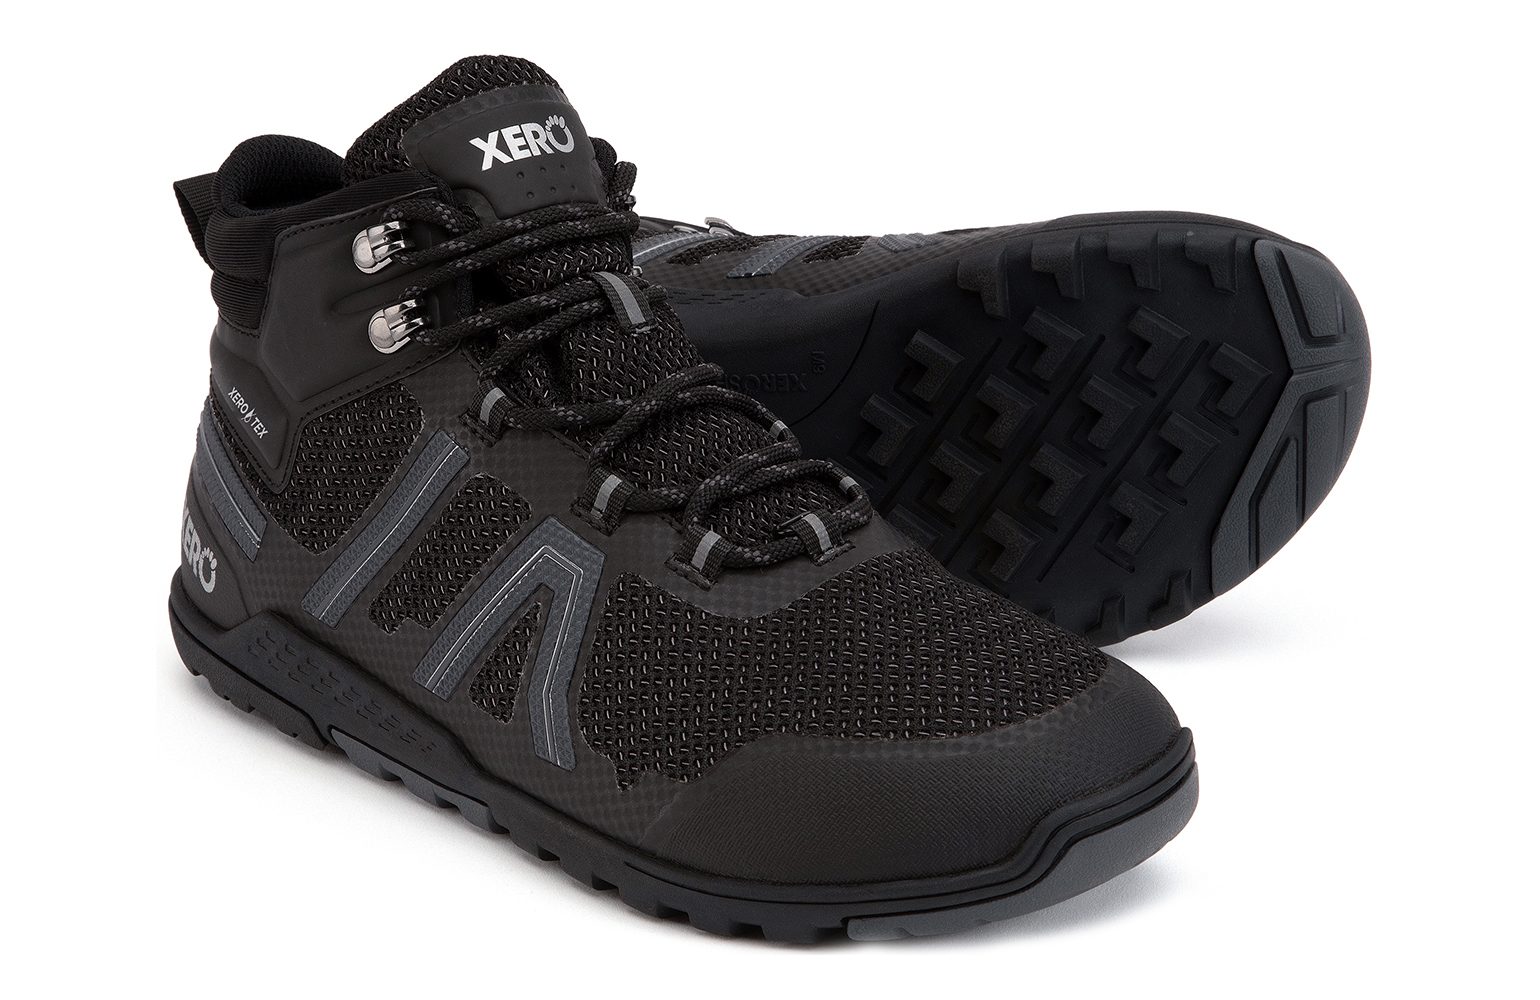 Xero Shoes Xcursion Fusion Black/Titanium Women hiking boots